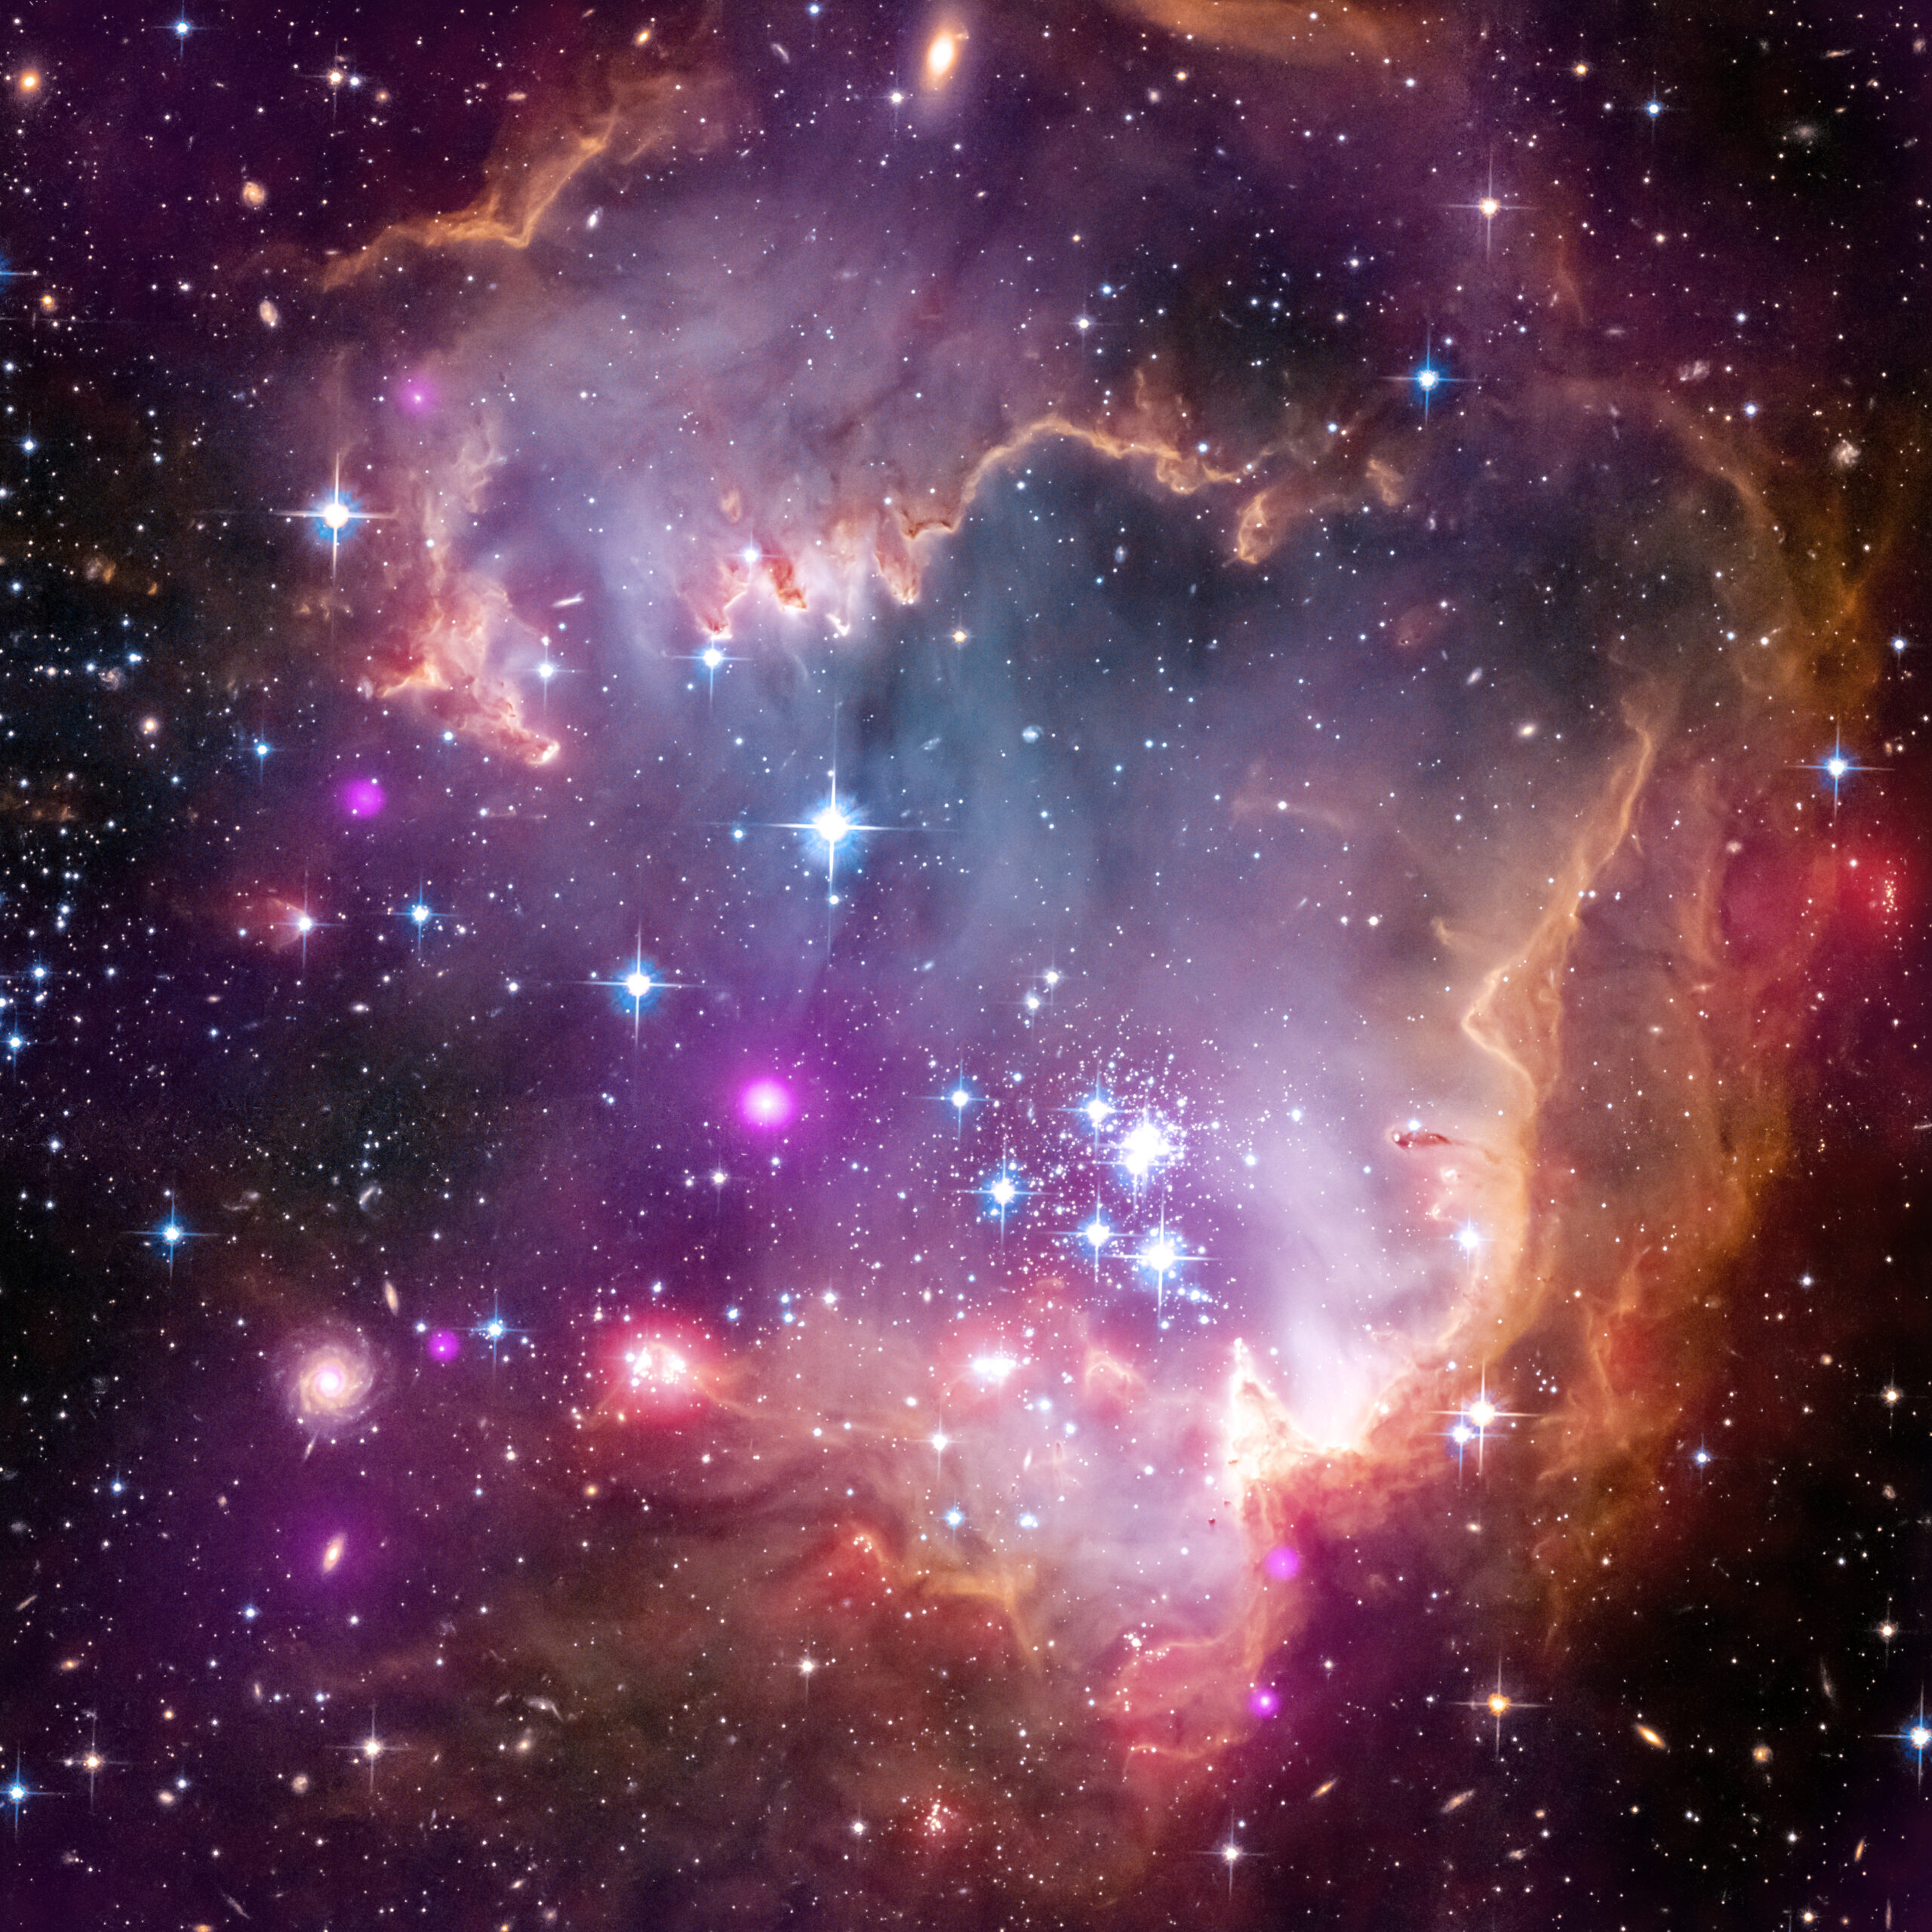 Immagine dell'ammasso stellare aperto NGC 602